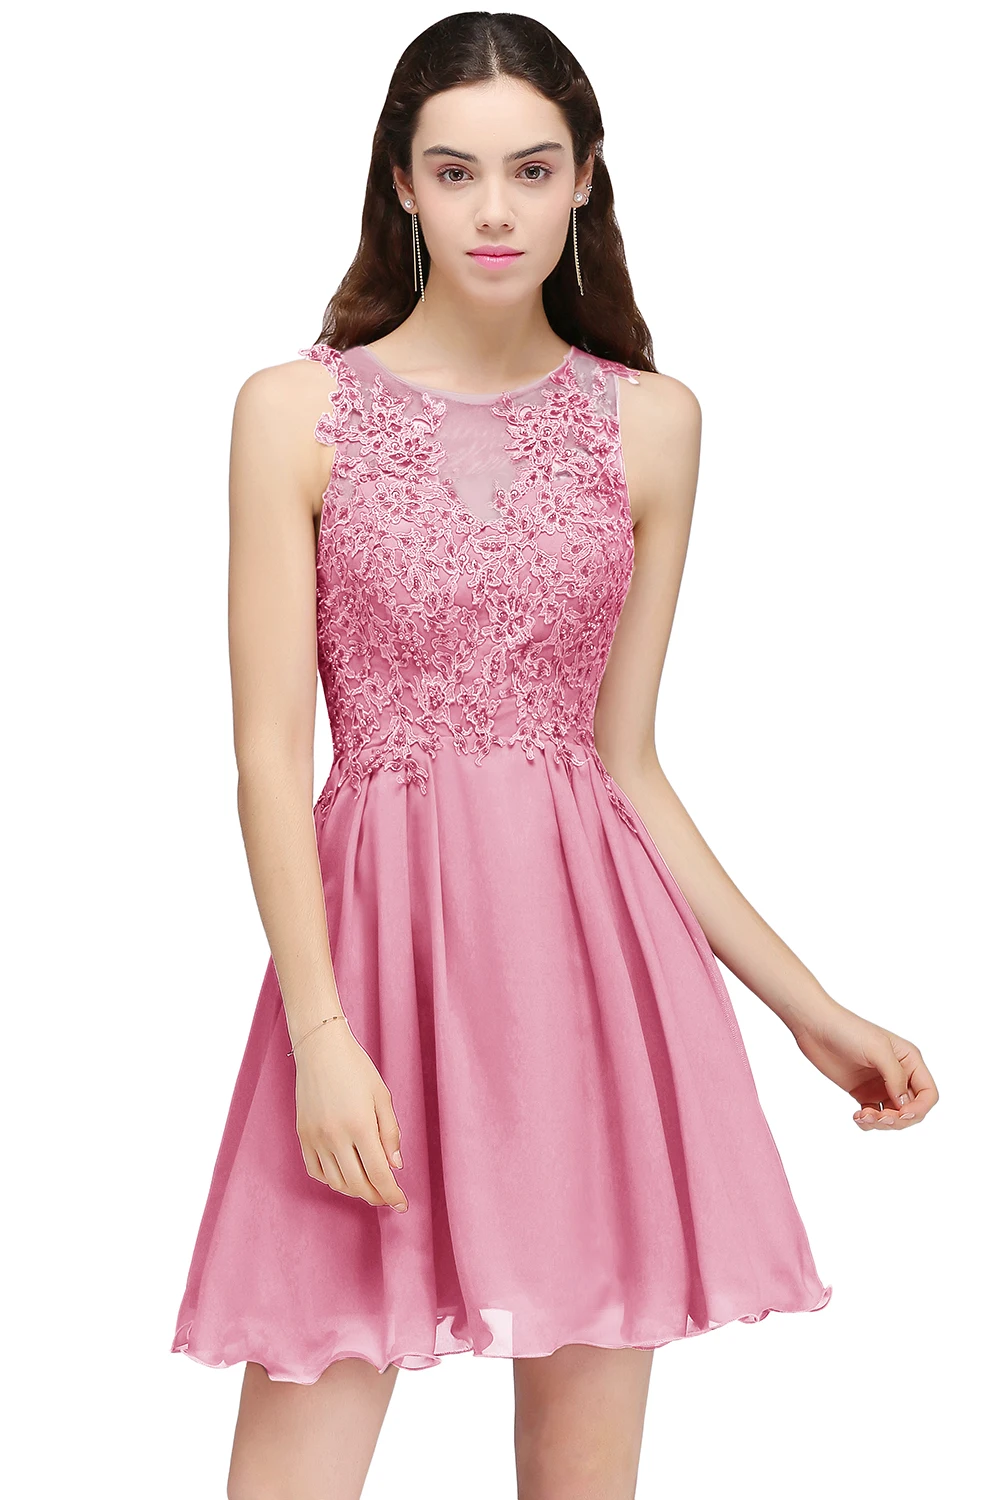 Розовое бордовое шифоновое Короткое Платье Для подружки невесты аппликация бисером пригласительные на свадьбу платье